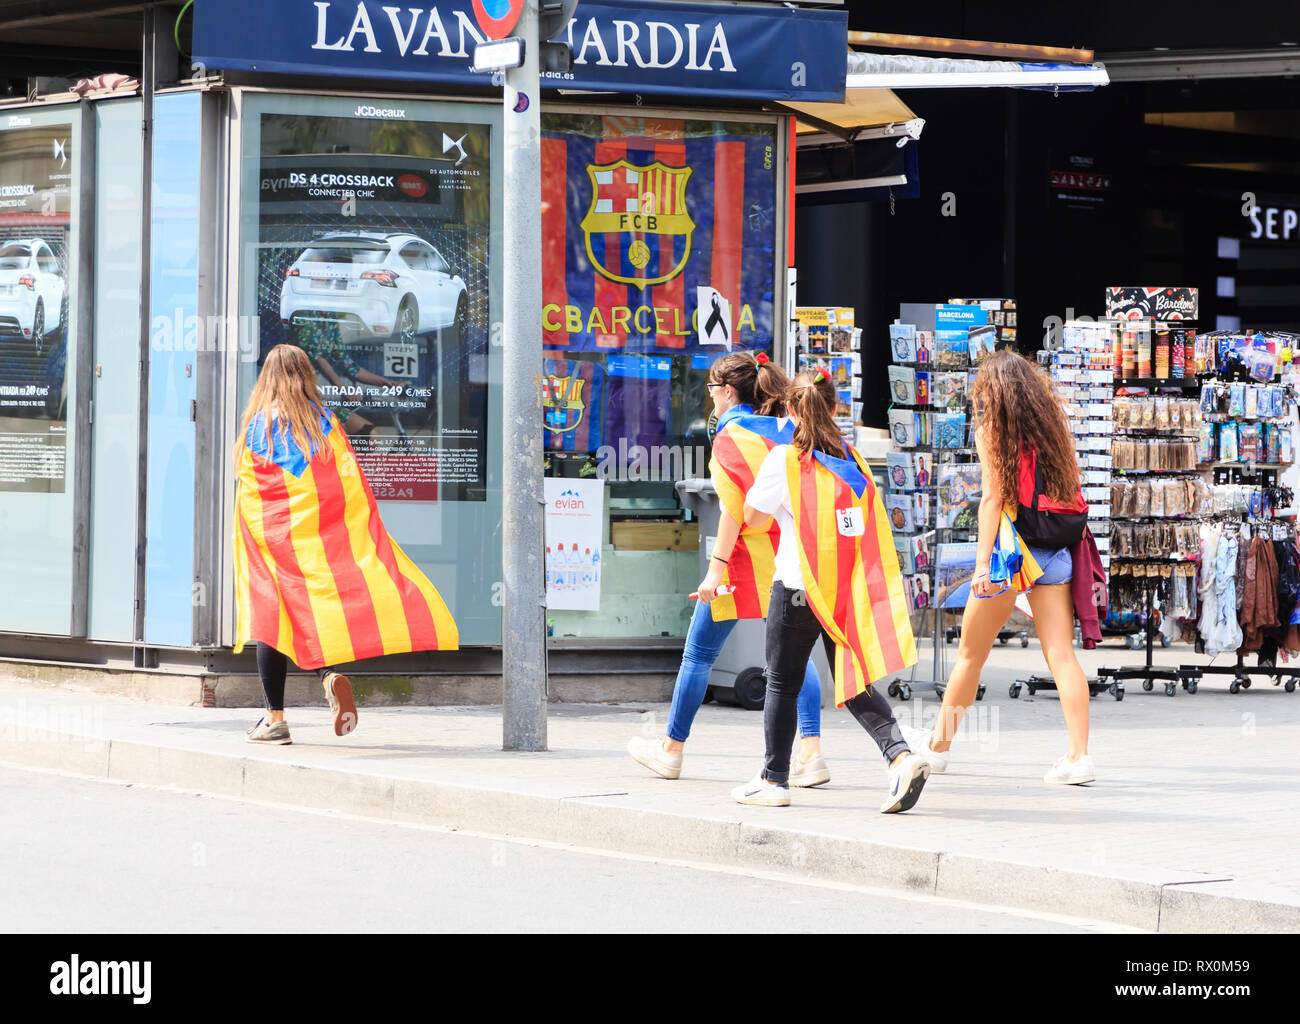 BARCELONA, España - 12 de febrero de 2019: una docena de dirigentes de Cataluña el fracasado intento de independencia de 2017 han ido a juicio en Madrid, enfrentando cargos includ Foto de stock